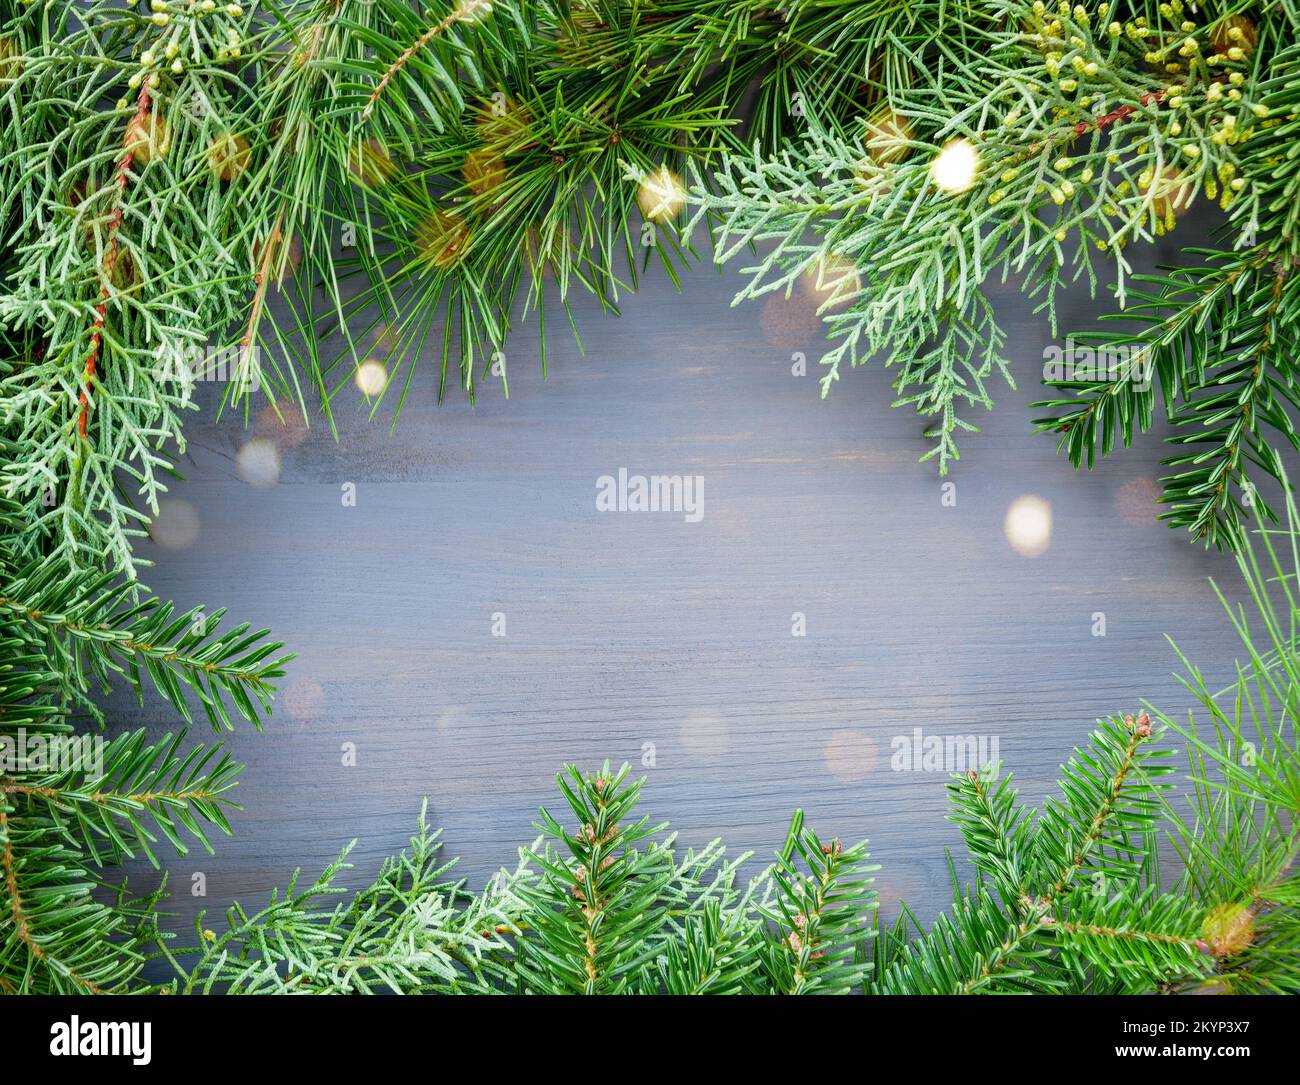 Los pinos y abetos las ramas de un árbol en el marco de fondo de madera. Feliz Navidad y Feliz Año Nuevo tarjeta de felicitación Foto de stock